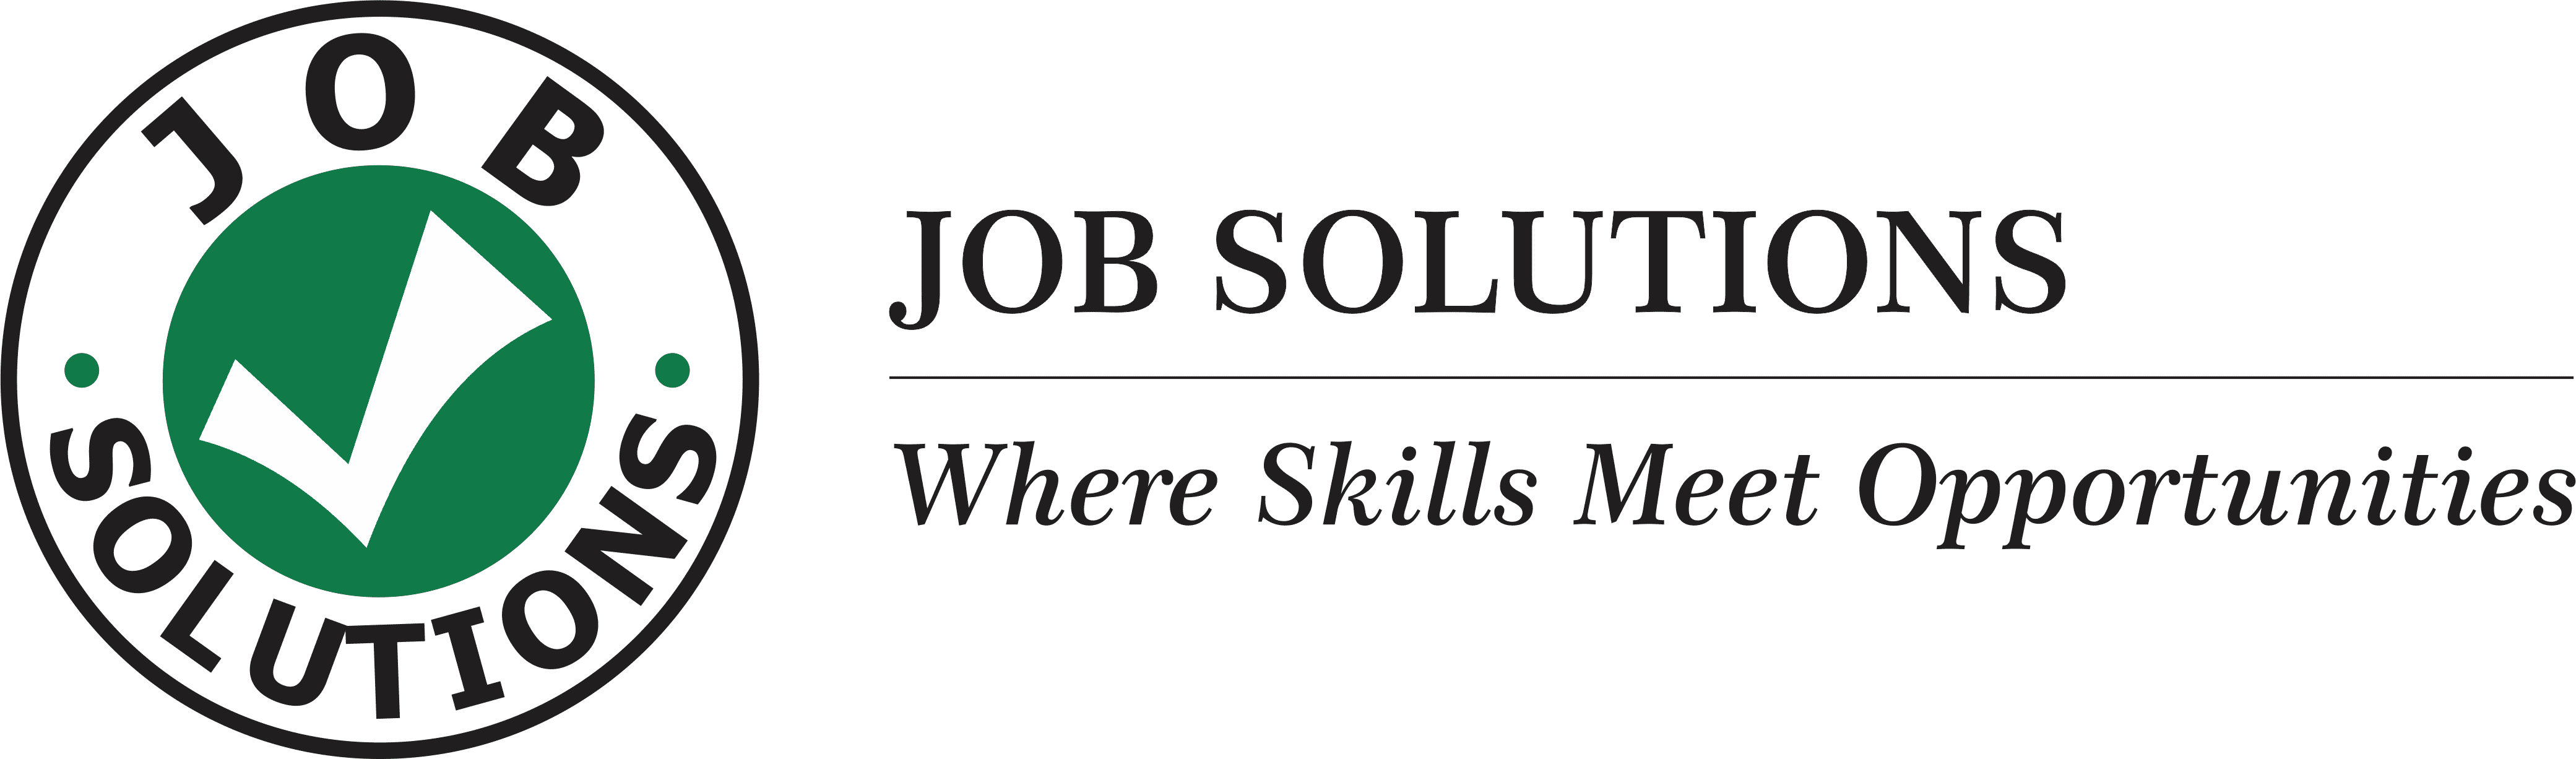 Job-Solutions-logo-1.png